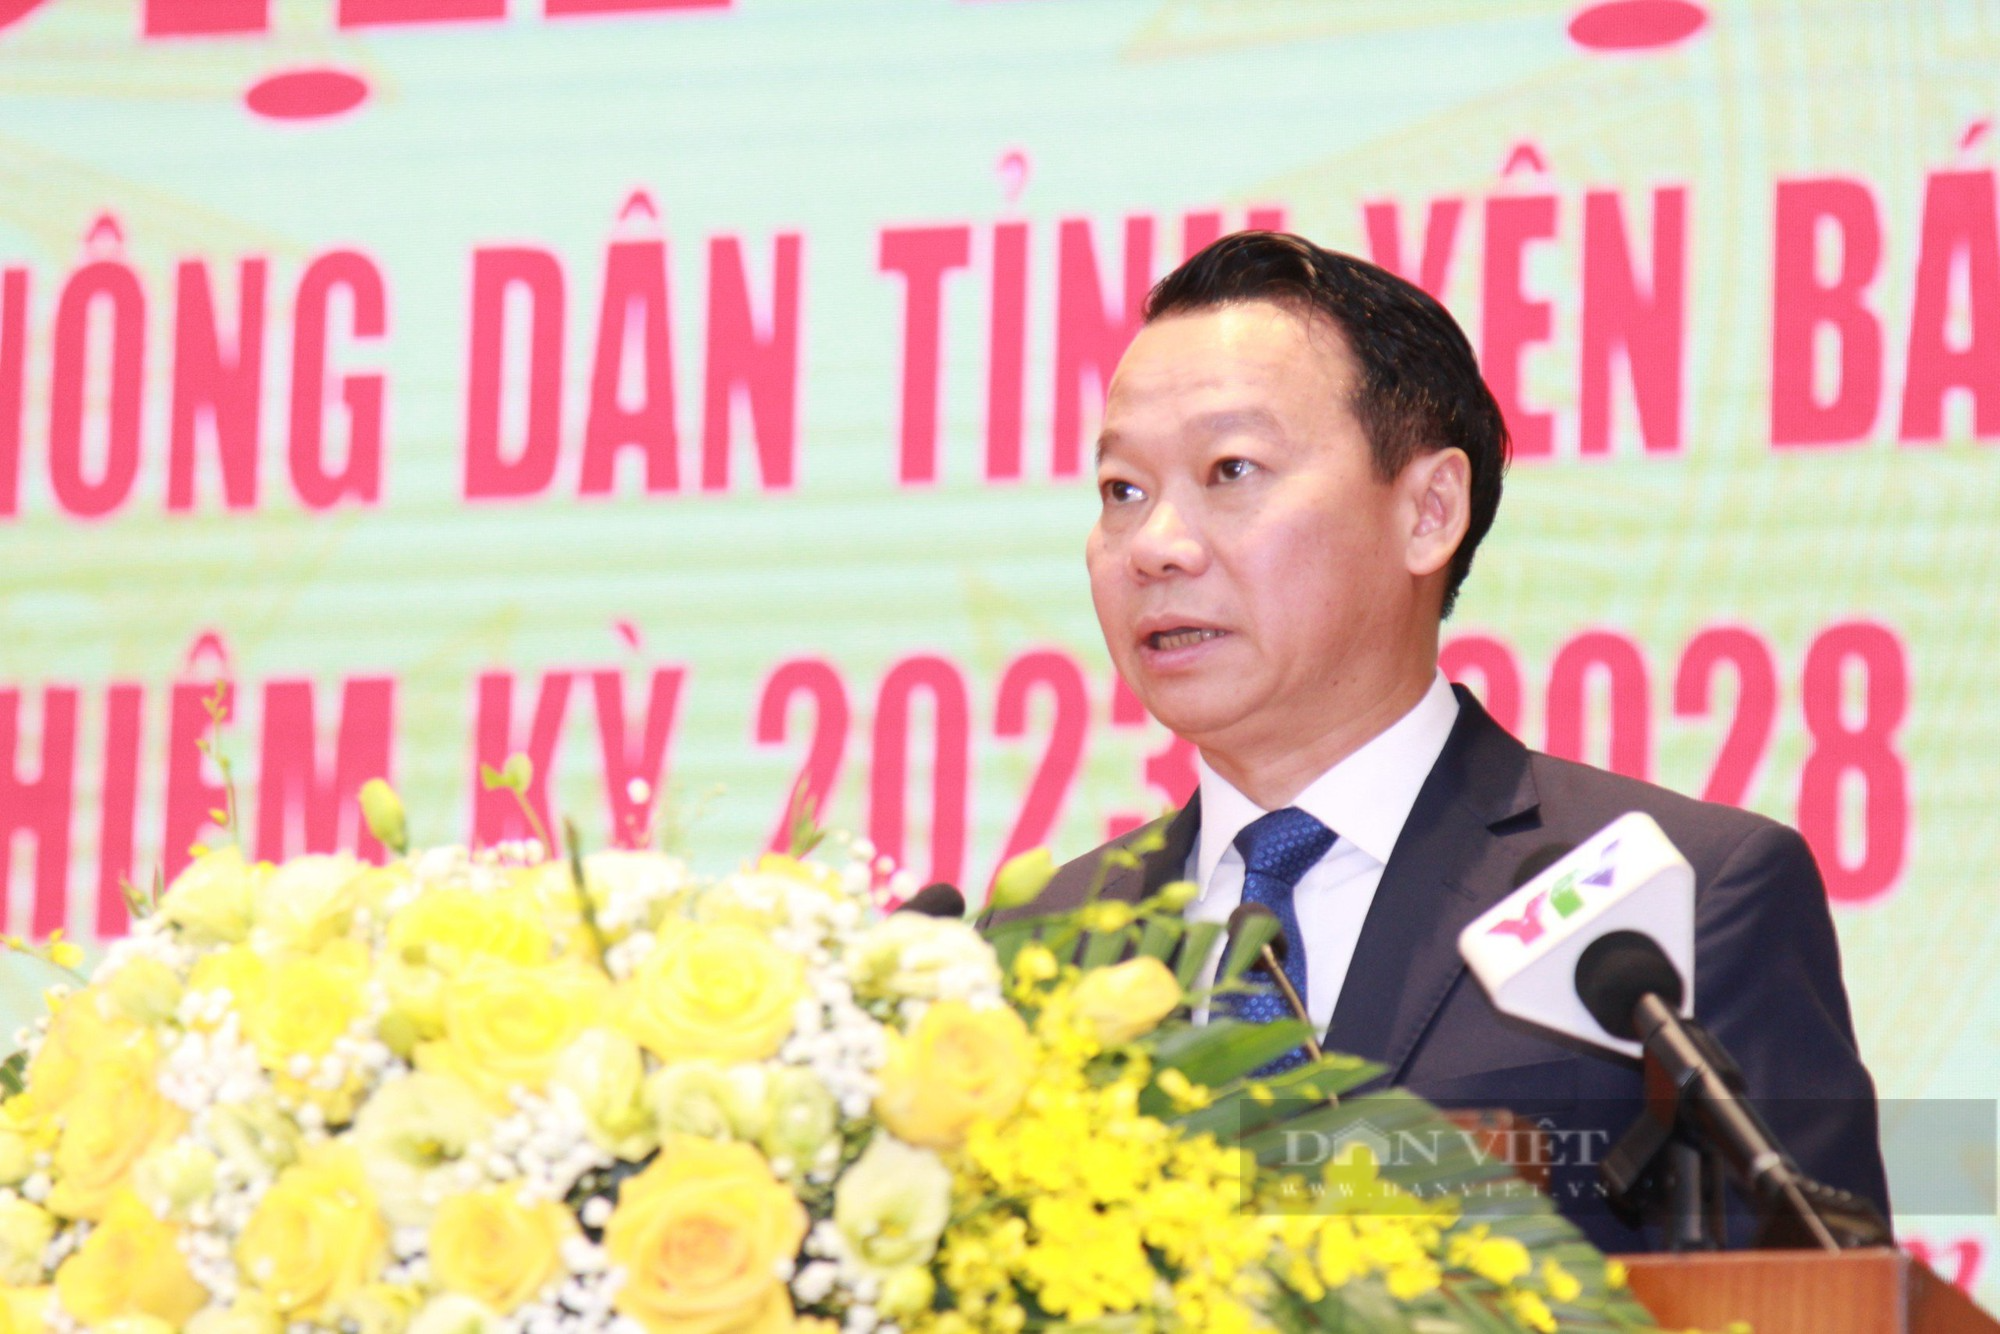 Phó Chủ tịch Hội NDVN Bùi Thị Thơm: Hội Nông dân Yên Bái vận động hội viên phát huy bản sắc dân tộc- Ảnh 4.